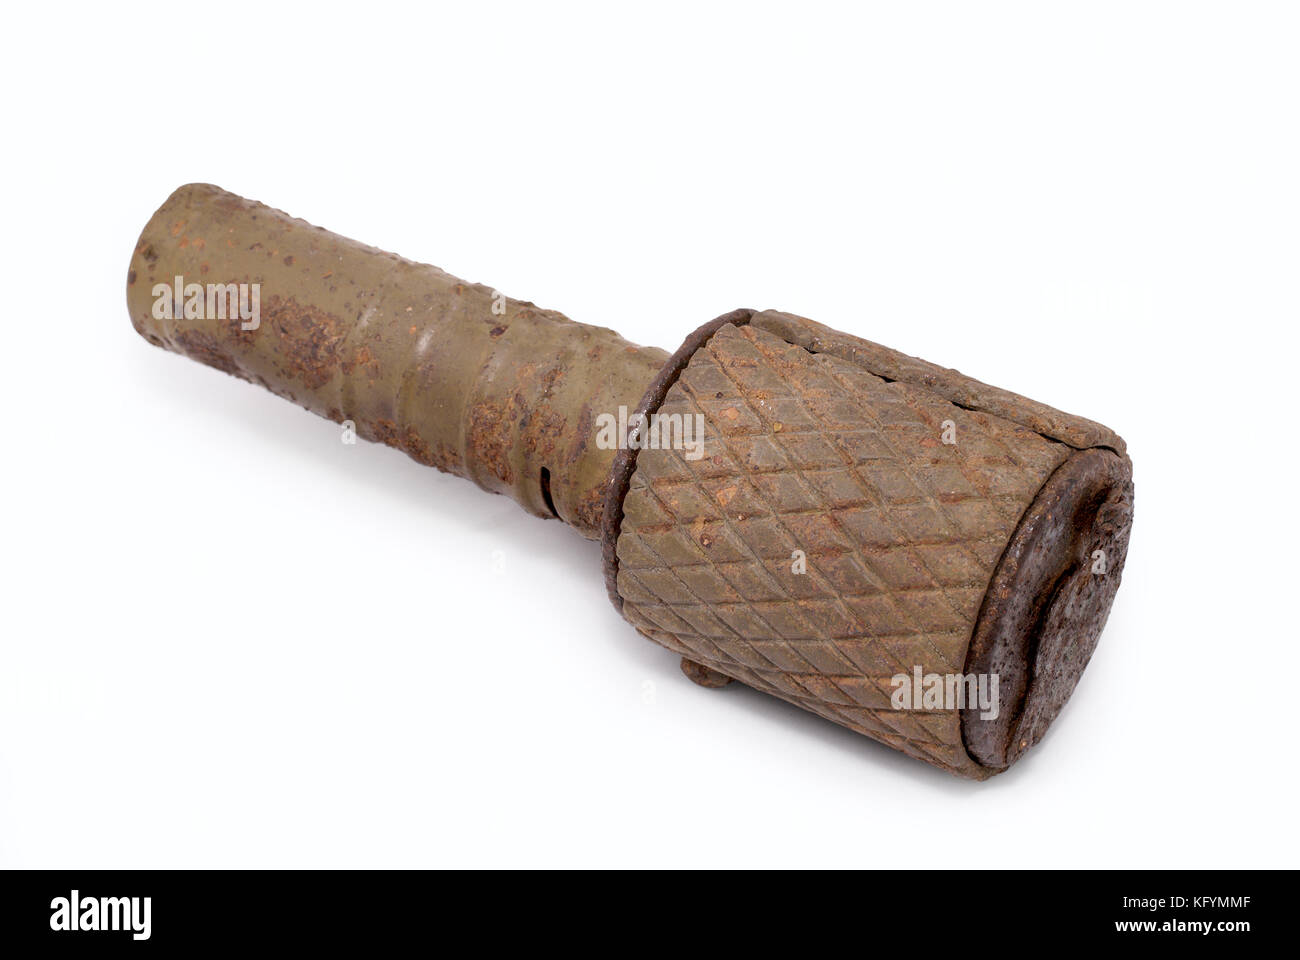 Granadas de mano soviética (RGD 33). Este tipo de granadas de mano podría utilizar en ataque y en defensa (adicional de hierro fundido de chaqueta). Foto de stock